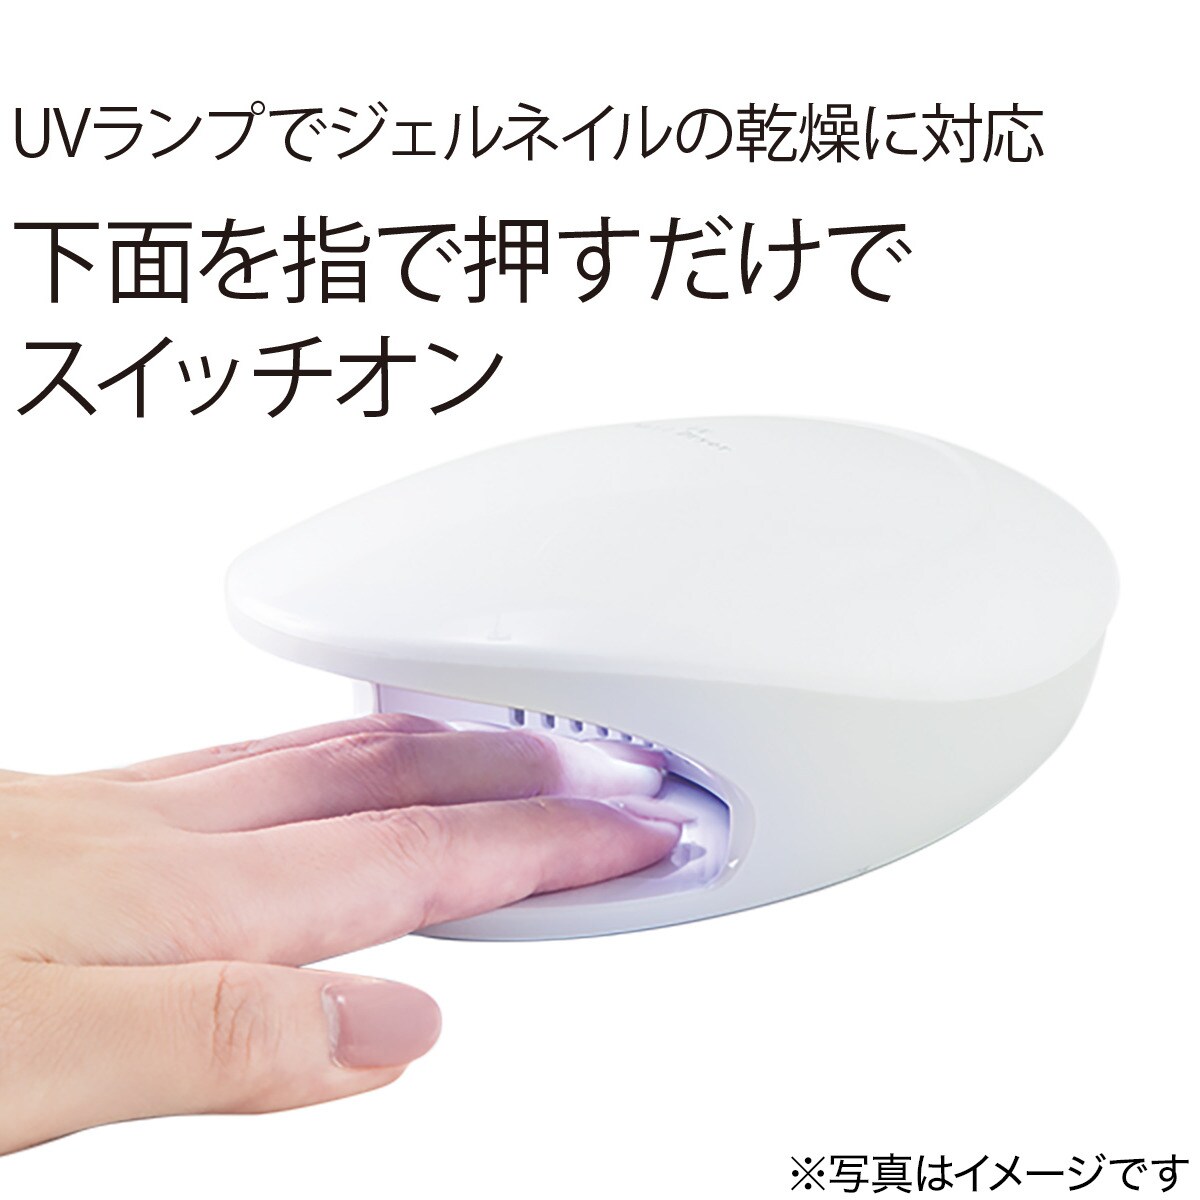 UVネイル乾燥機(ホワイト)通販 ニトリネット【公式】 家具・インテリア通販